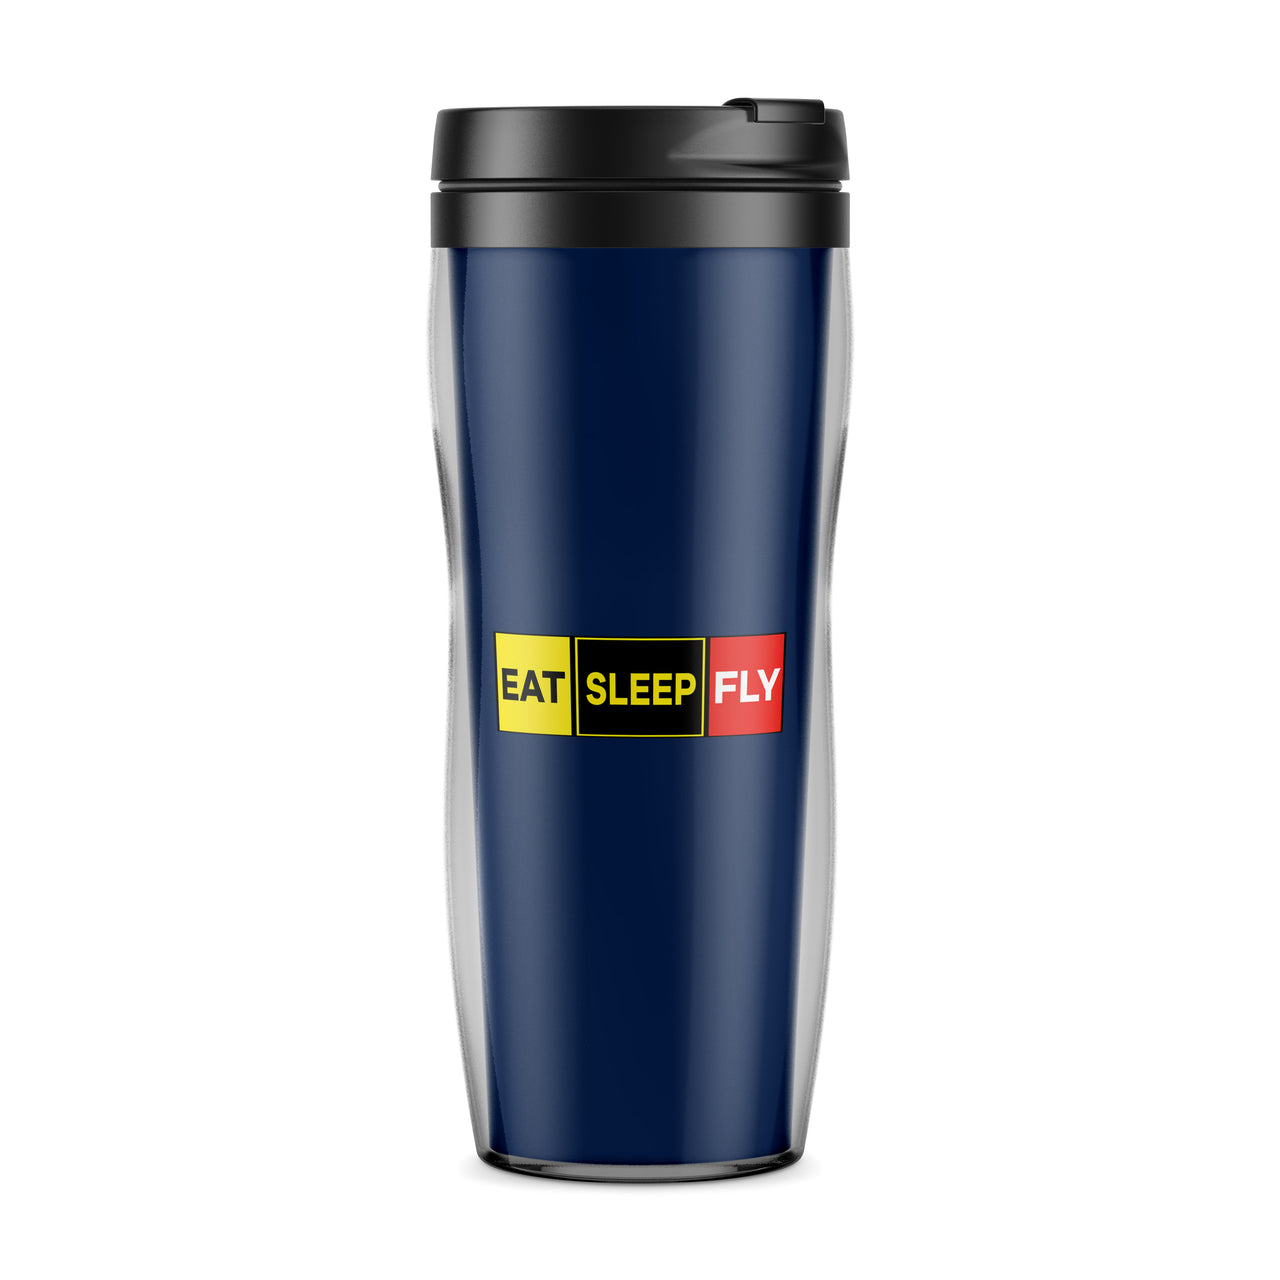 Eat Sleep Fly (Colourful) Designed Travel Mugs